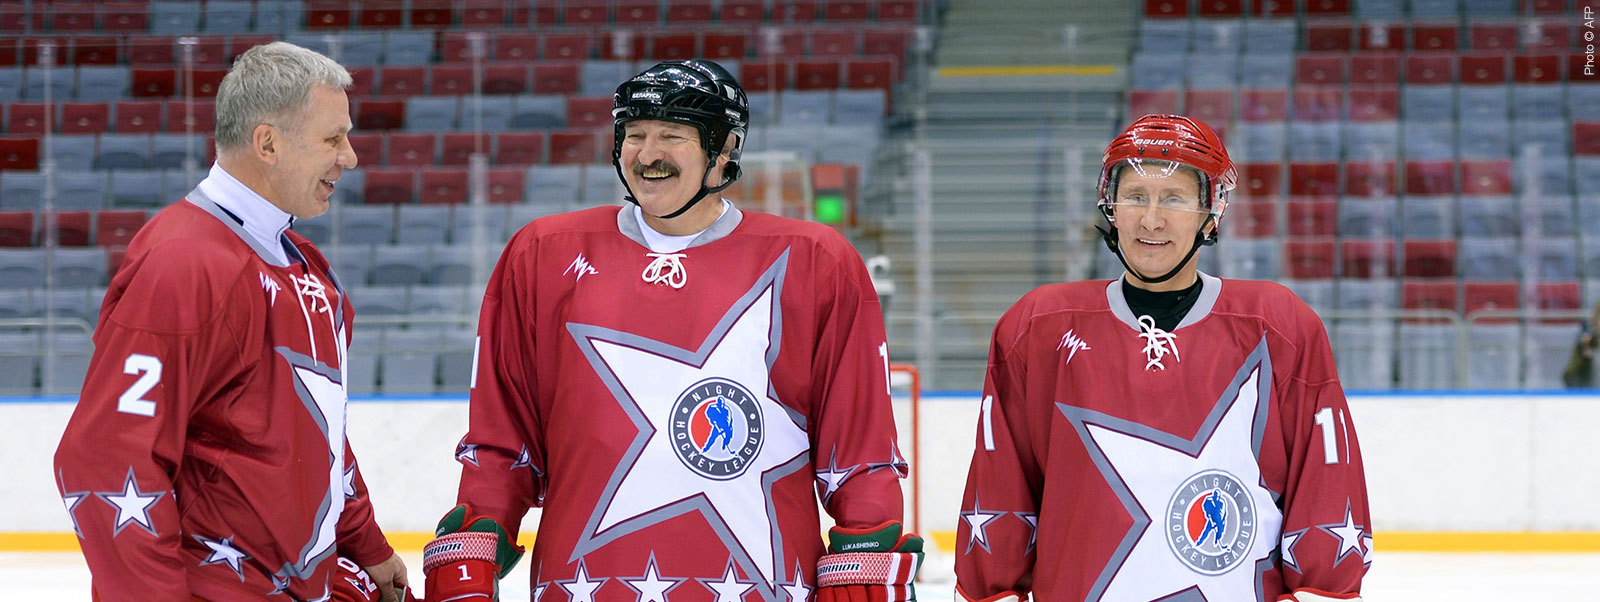 Le président russe Vladimir Poutine et Alexandre Loukachenko participent à un match de hockey avec le champion russe Vyacheslav Fetisov à Sotchi le 4 janvier 2014.